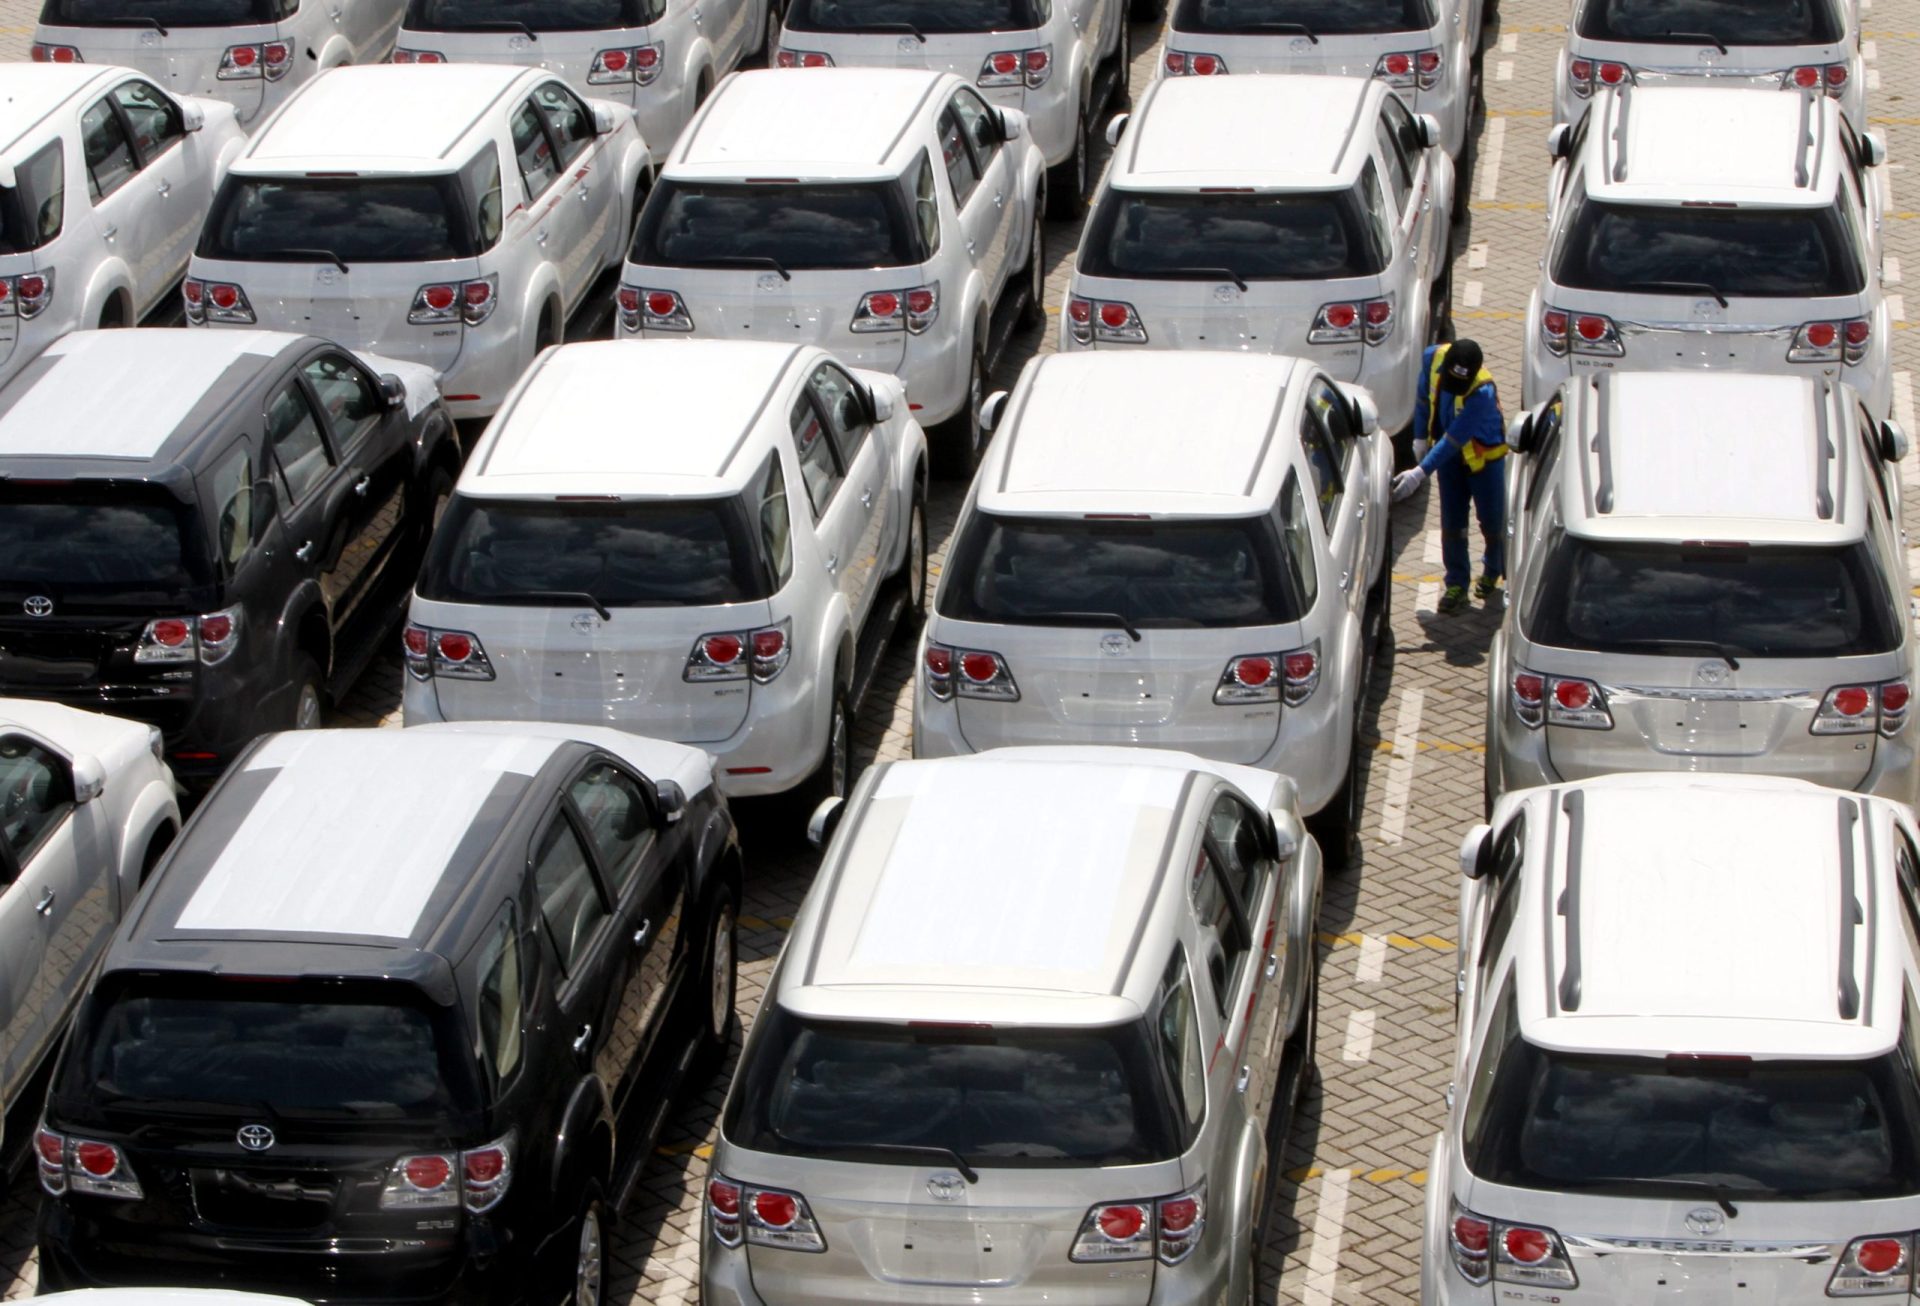 Quercus diz que isenção do Imposto de Circulação vai aumentar abandono de carros